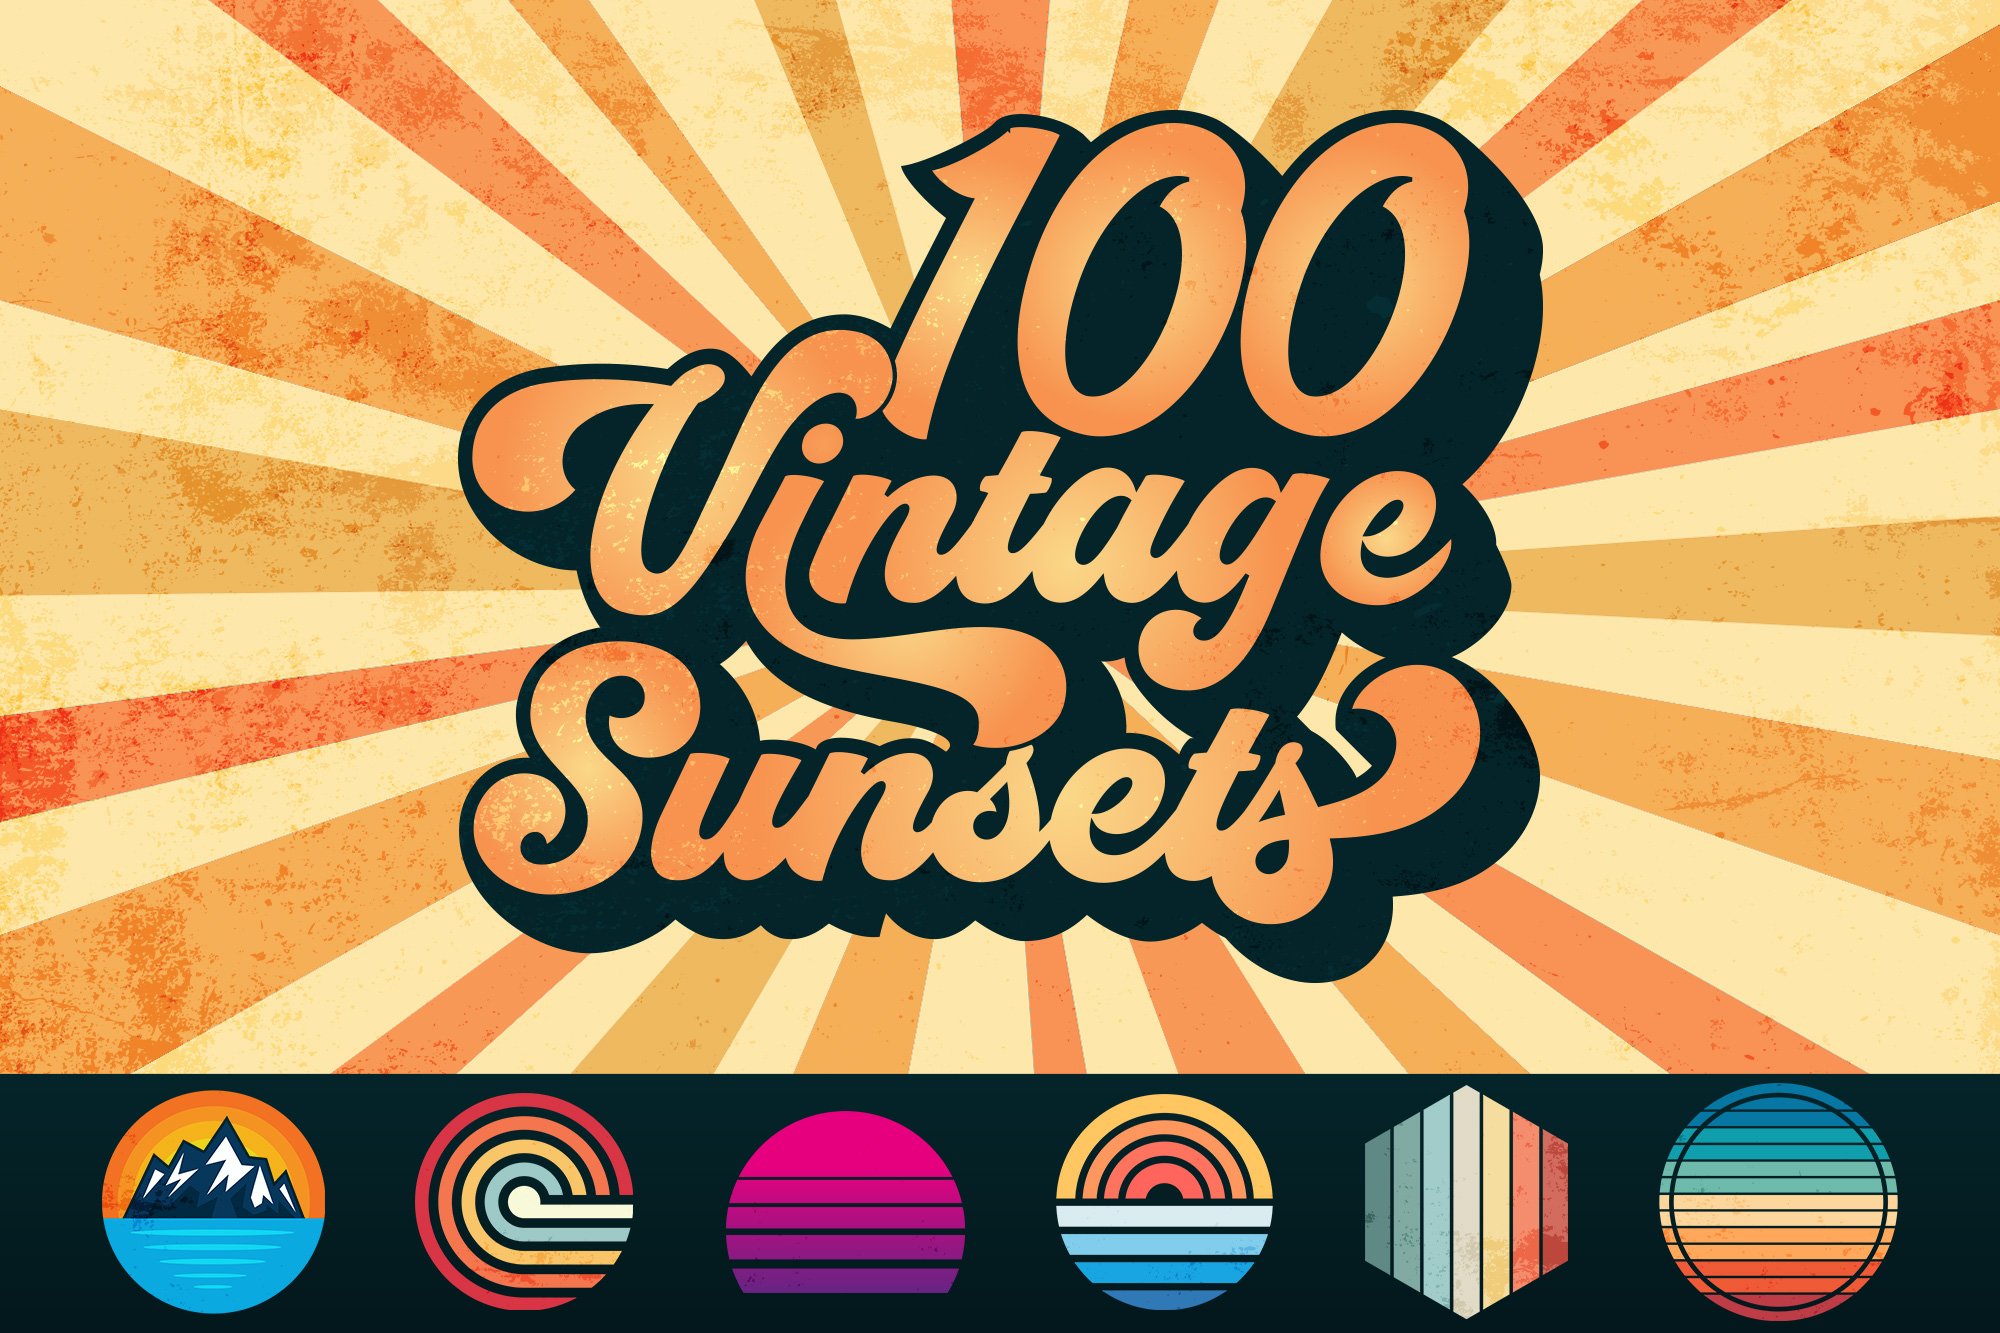 100 Vintage Retro Sunset Bundle SVG cover image.